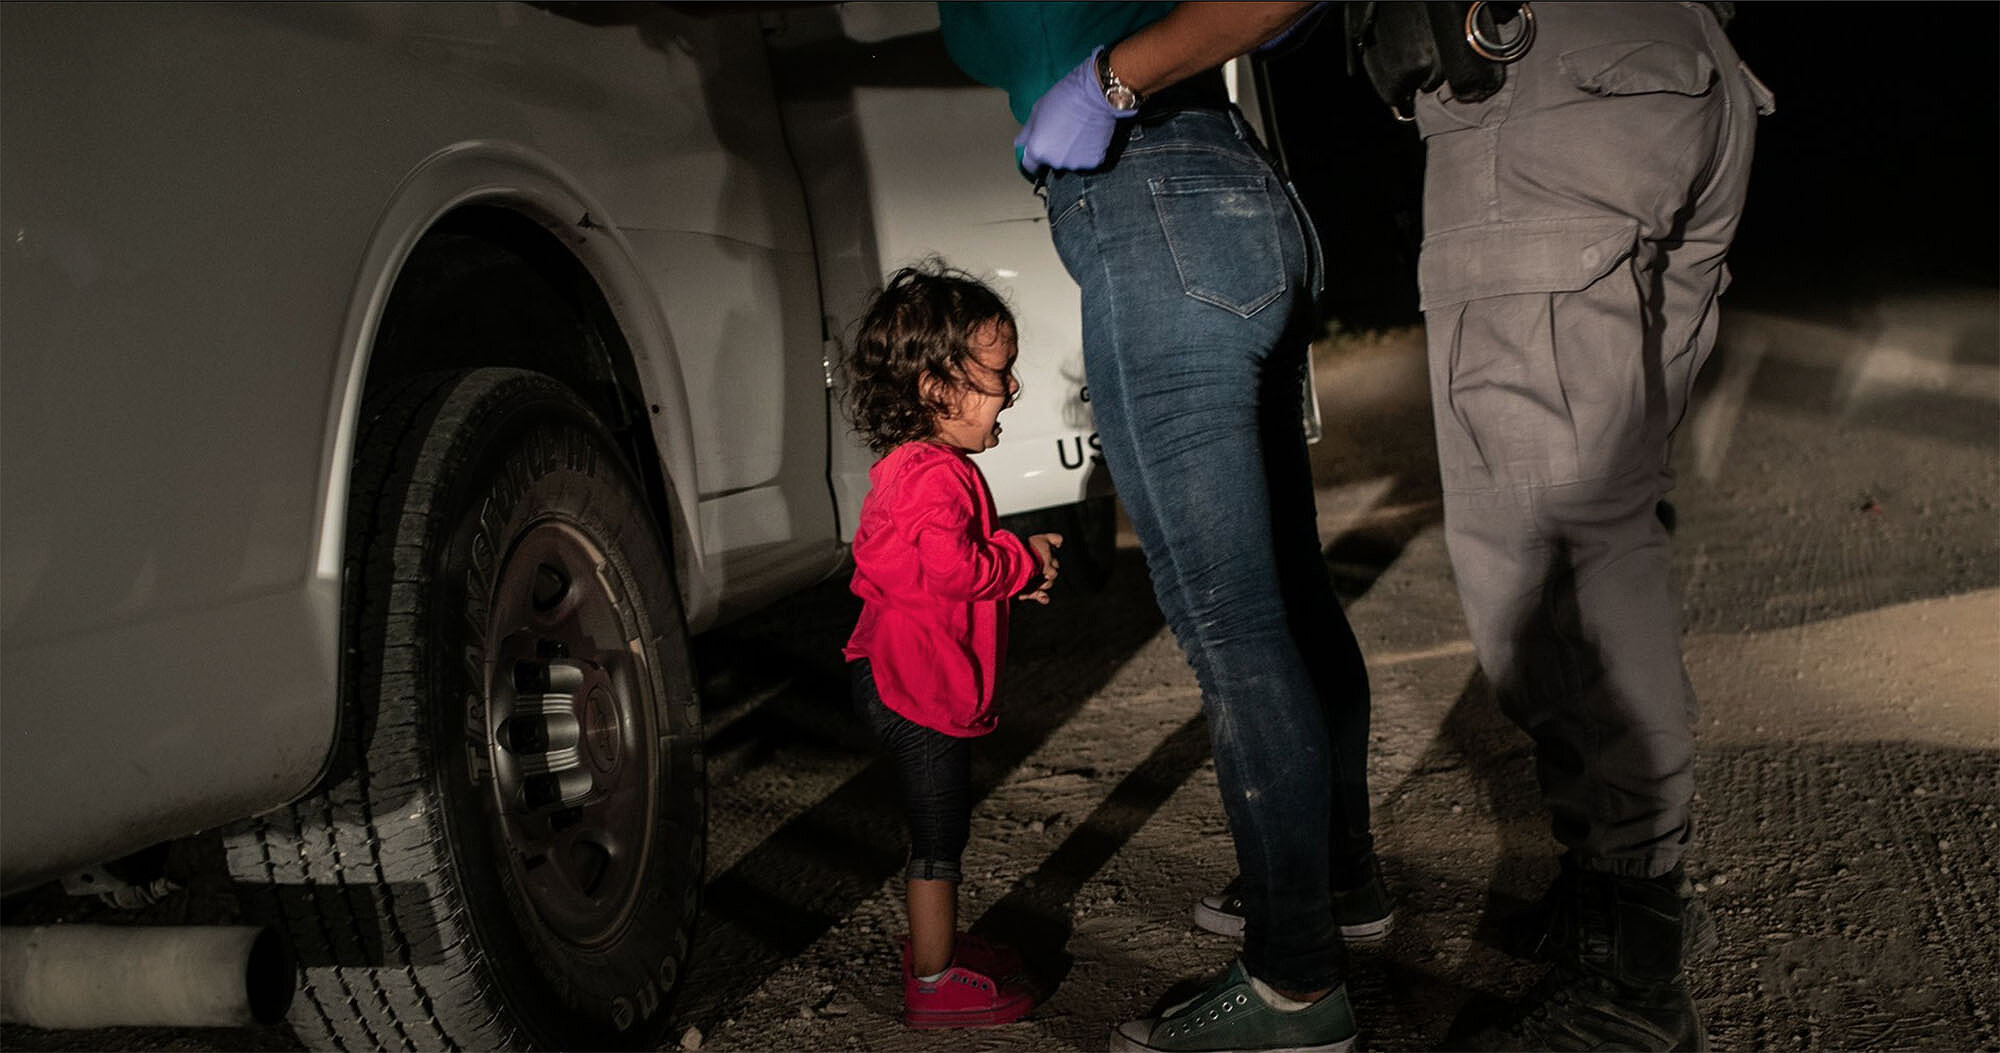 <p>Фото года. Американский пограничник обыскивает Сандру Санчес из Гондураса на глазах у ее маленькой дочери</p>